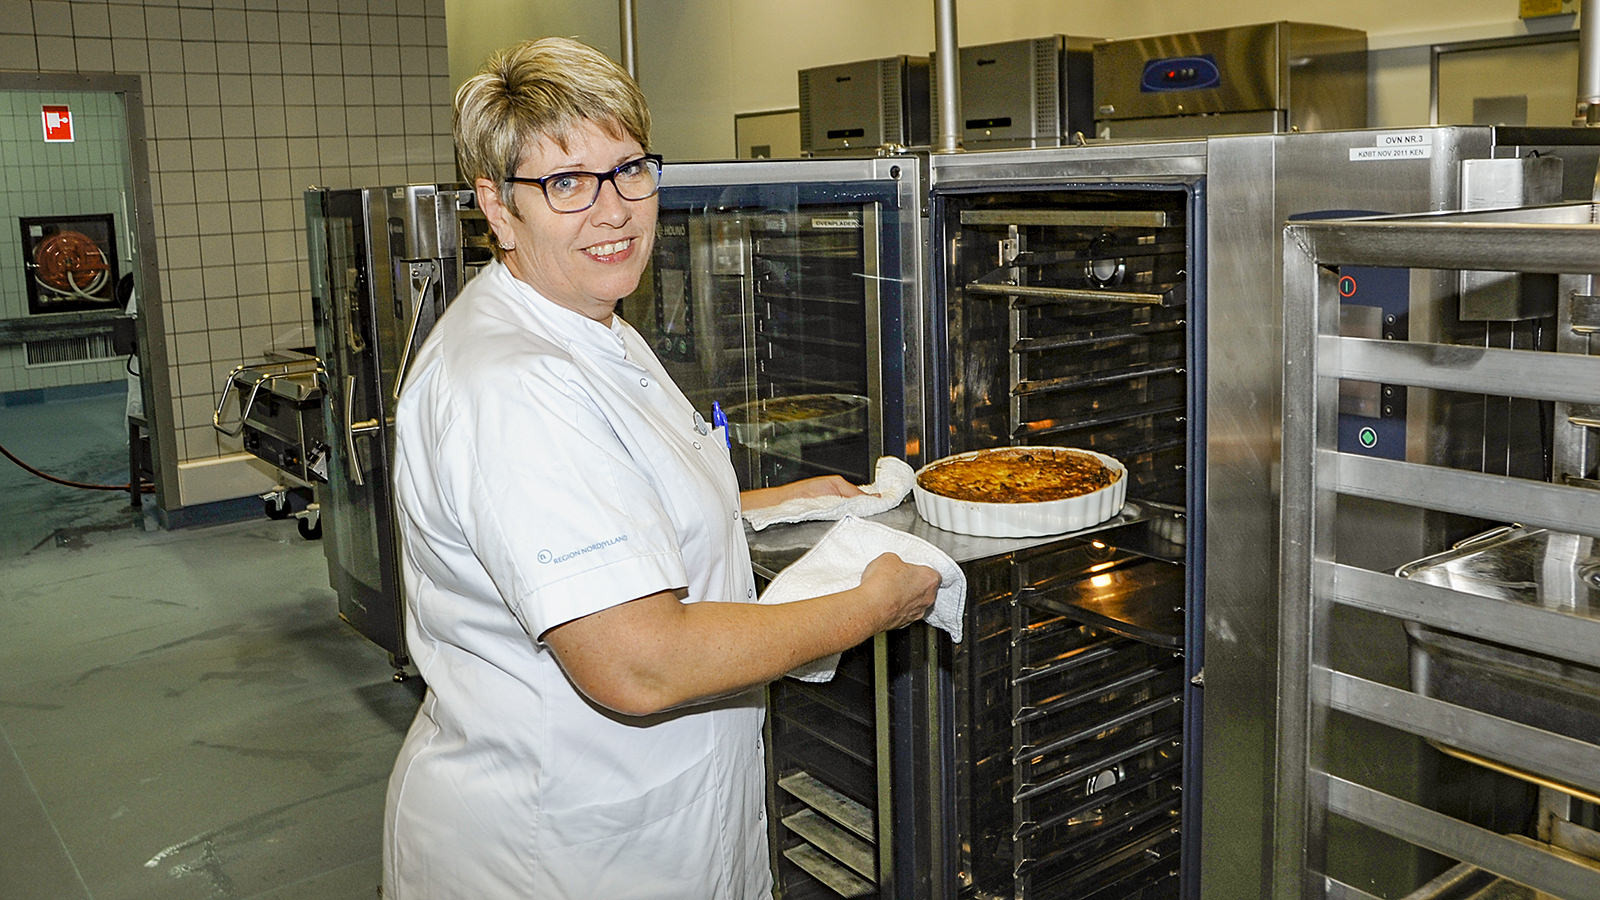 Marian Bloch Larsen, økonoma og afsnitsleder i køkkenet ved Aalborg Universitetshospital i Thisted, er ved at tage en tærte ud af ovnen i hospitalskøkkenet.